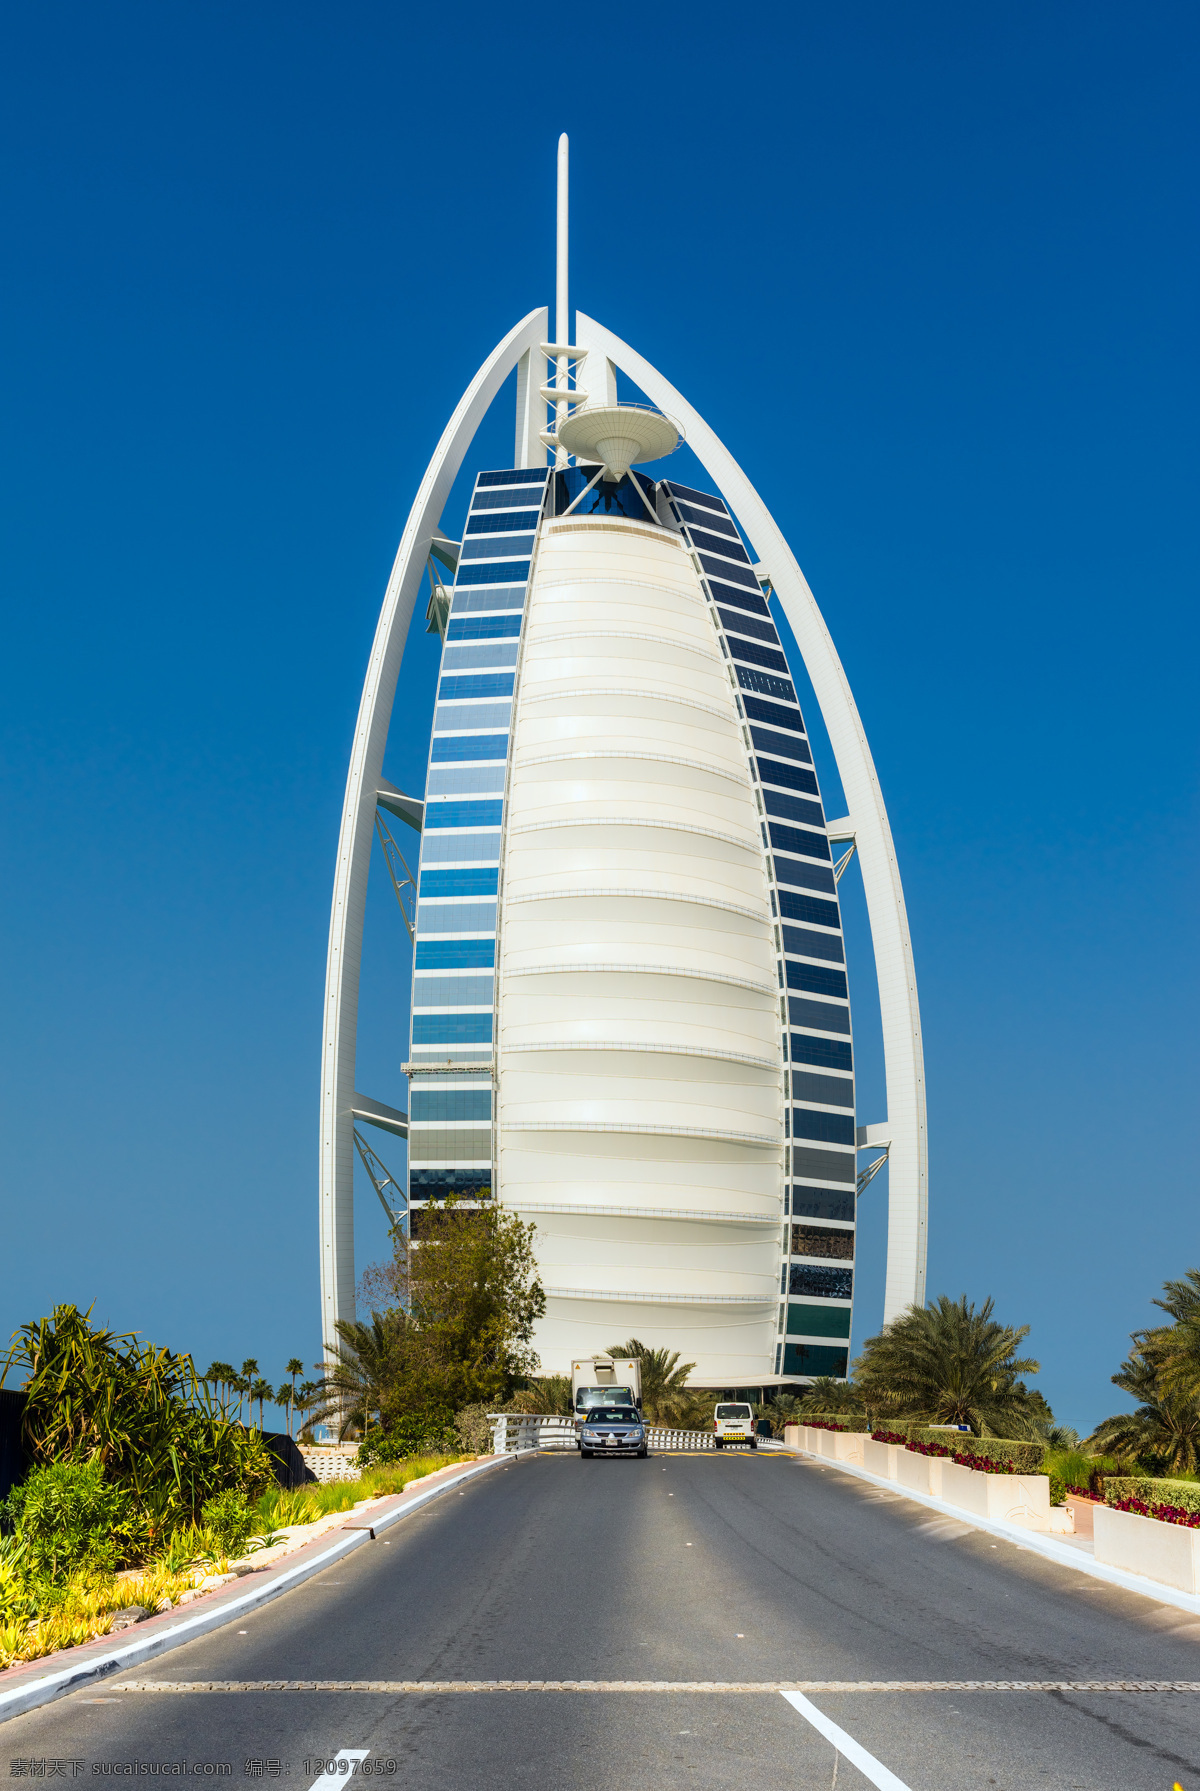 迪拜 酒店 迪拜标志建筑 迪拜名建筑 摩天大楼 高楼大厦 街道 城市风景 城市风光 环境家居